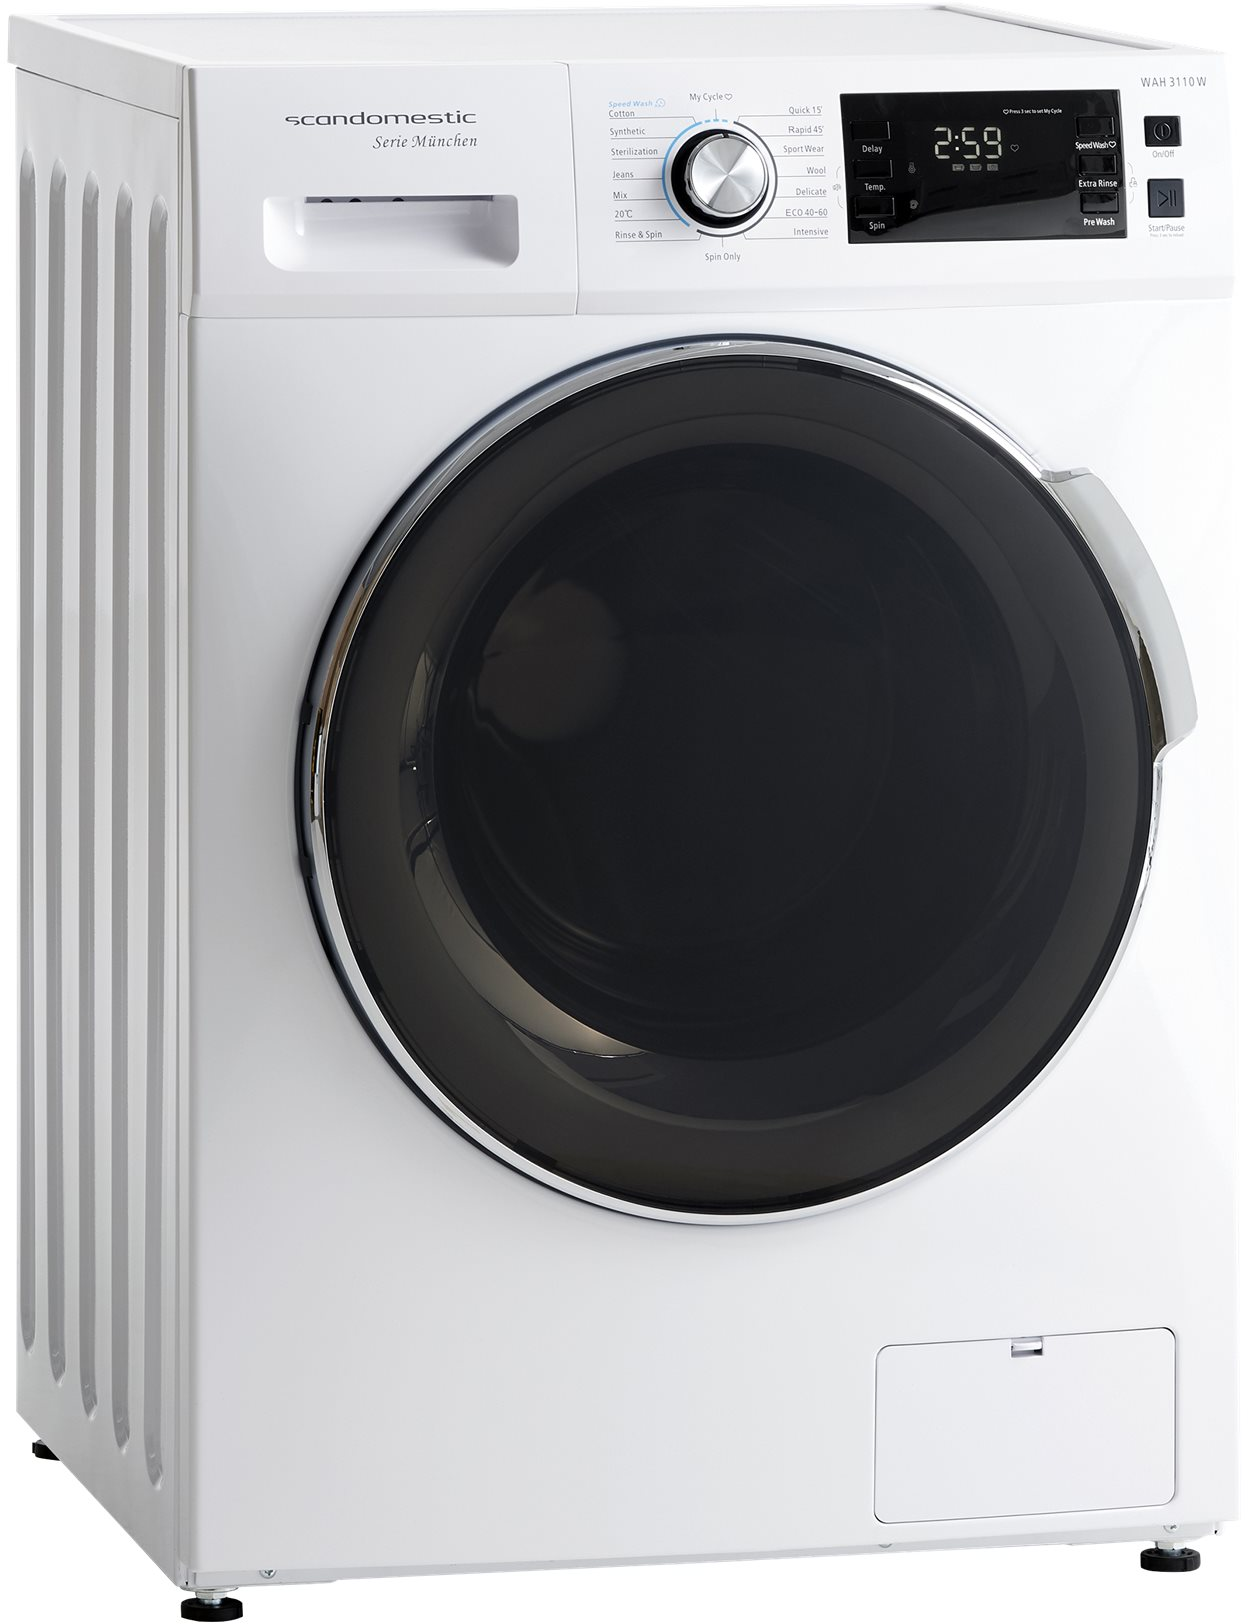 5704704012783 Scandomestic WAH 3110 W - Frontbetjent vaskemaskine Hvidevarer,Vaskemaskine,Frontbetjente vaskemaskiner 8300002780 WAH 3110 W